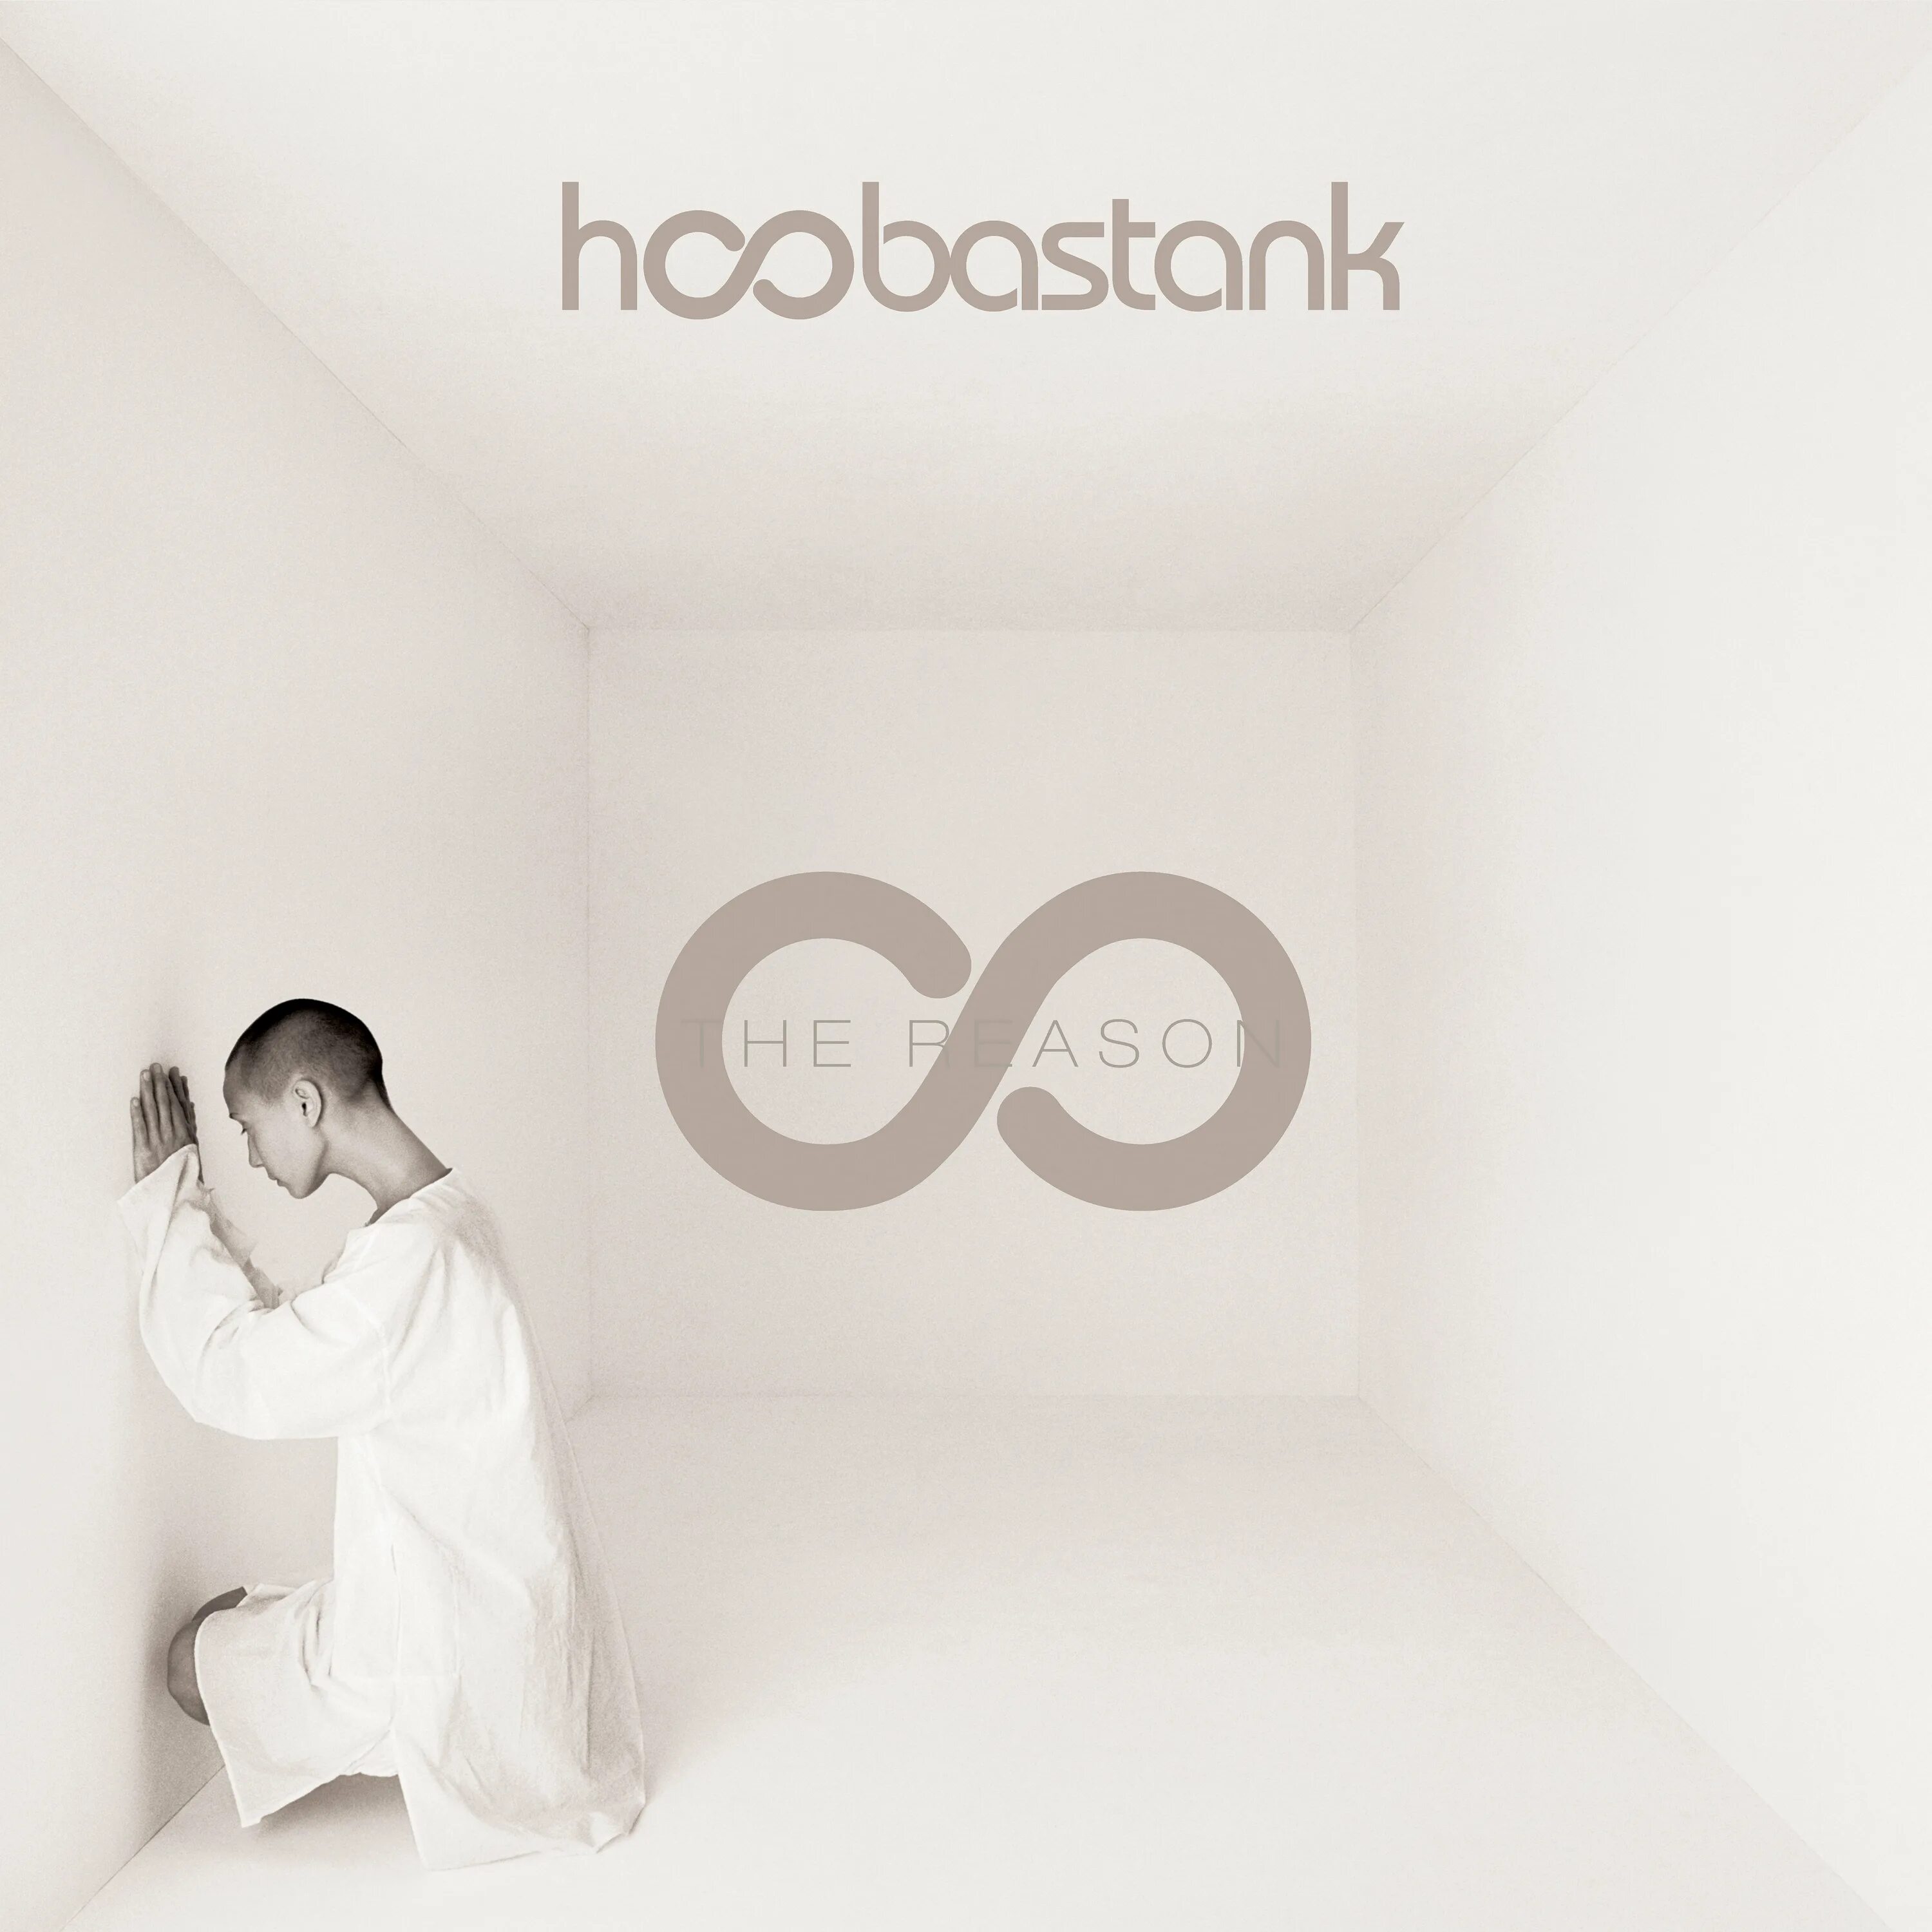 Hoobastank the reason. Hoobastank. Reason. Hoobastank the reason альбом. Hoobastank обложки альбомов.